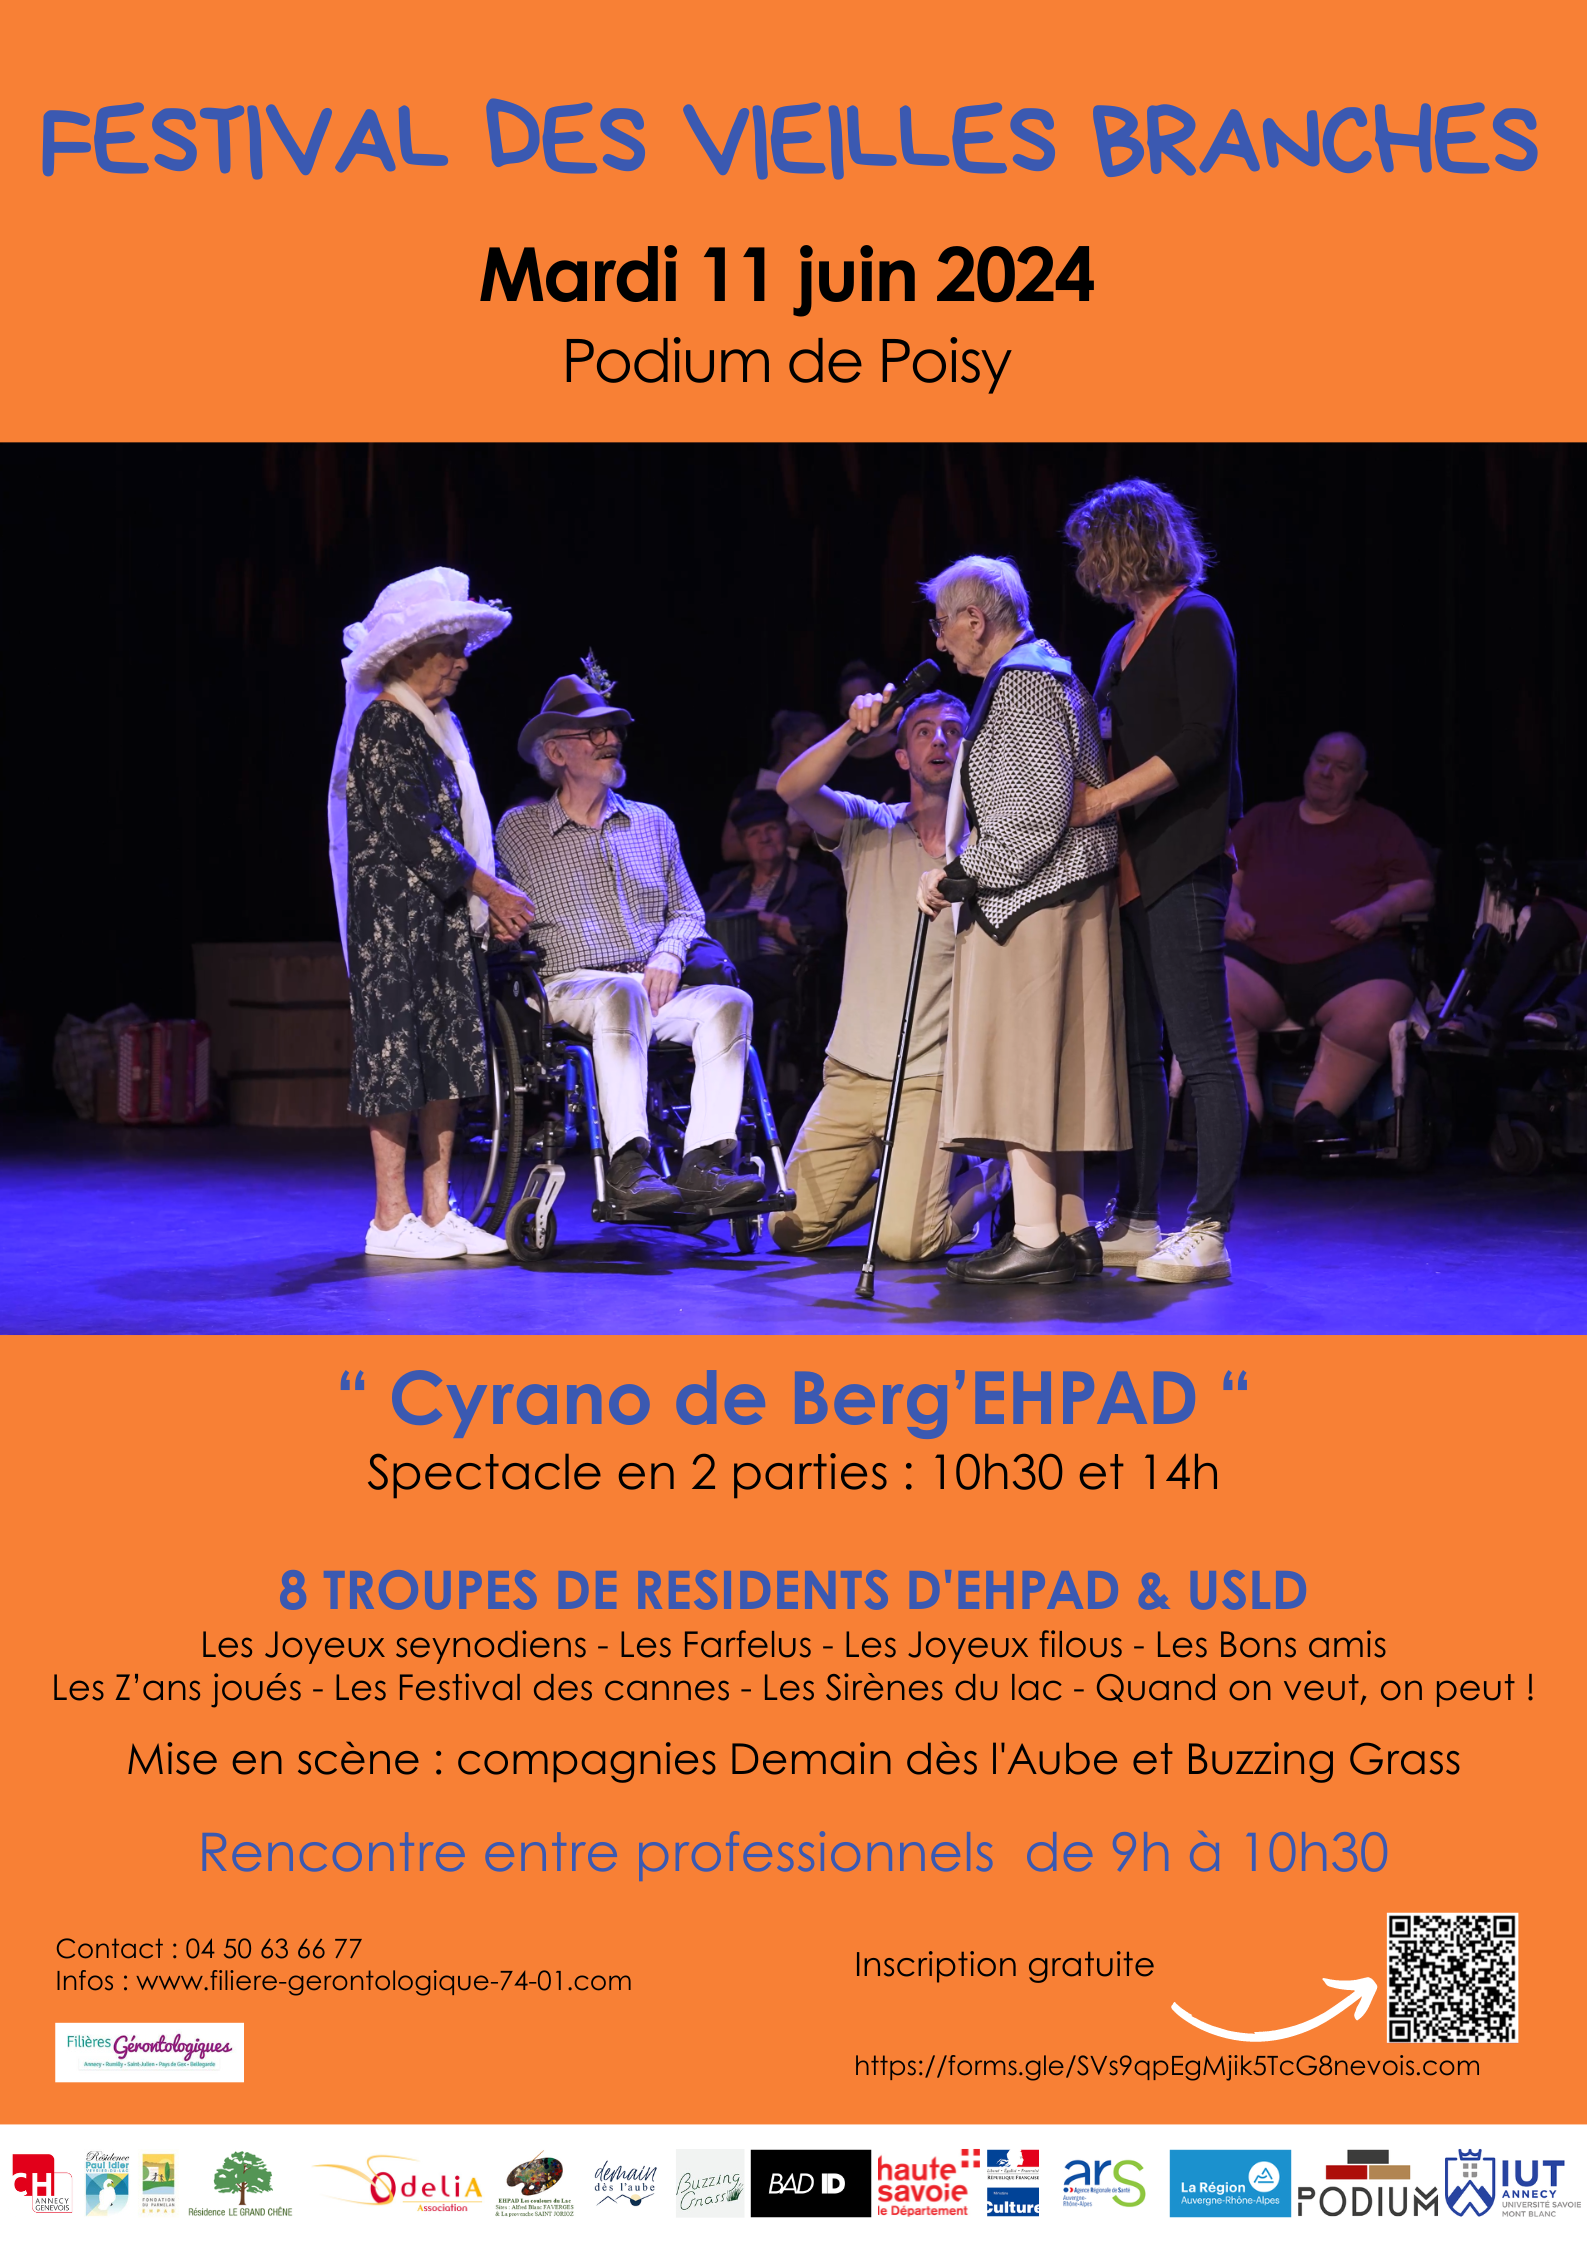 Festival des Vieilles Branches « Théâtre, danse et rencontre entre professionnels » – 11 juin 2024- Poisy